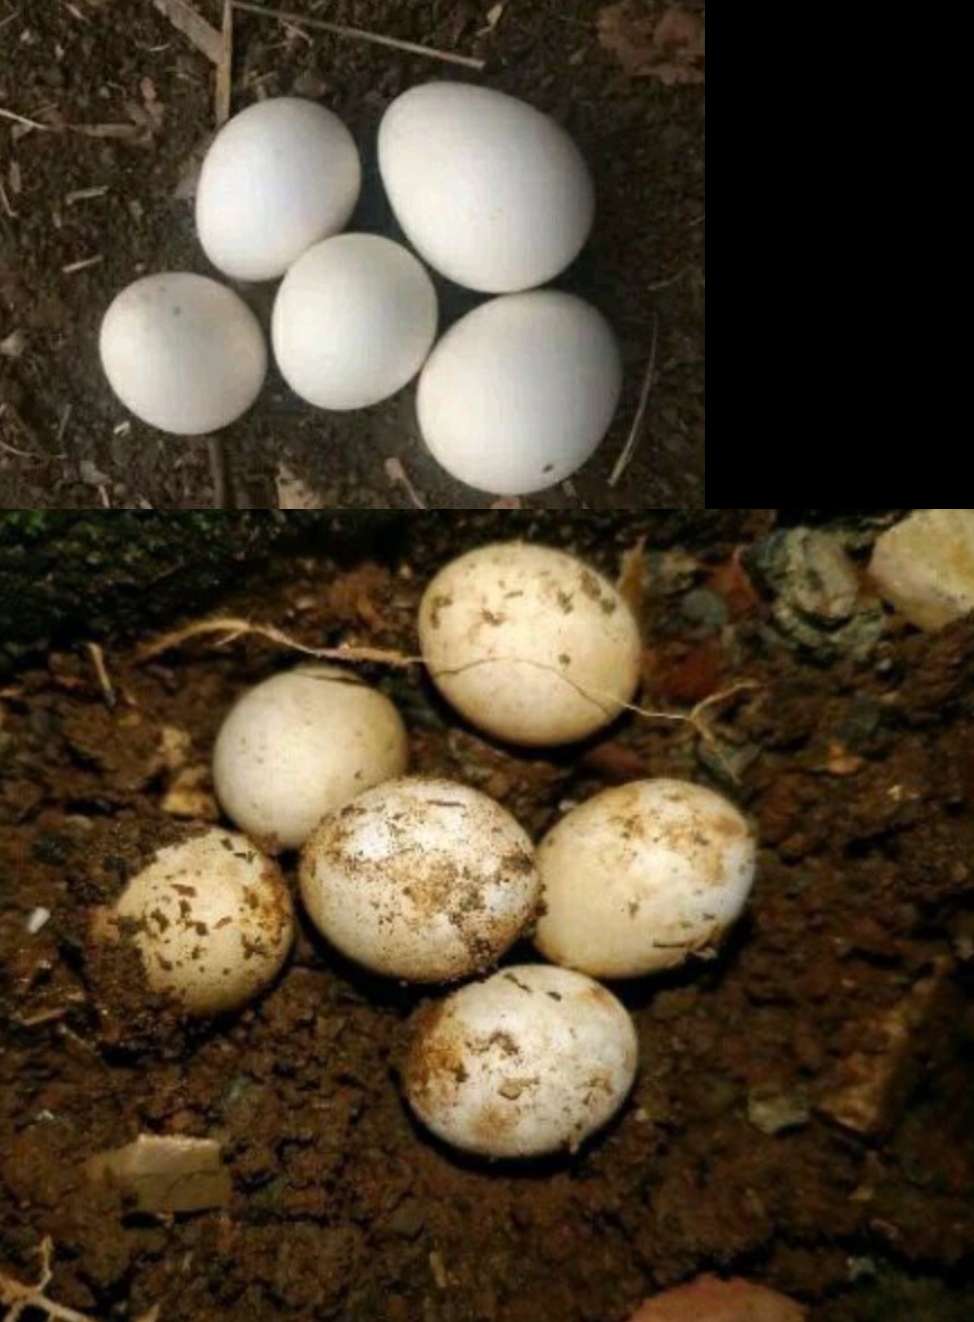 Reptiles eggs